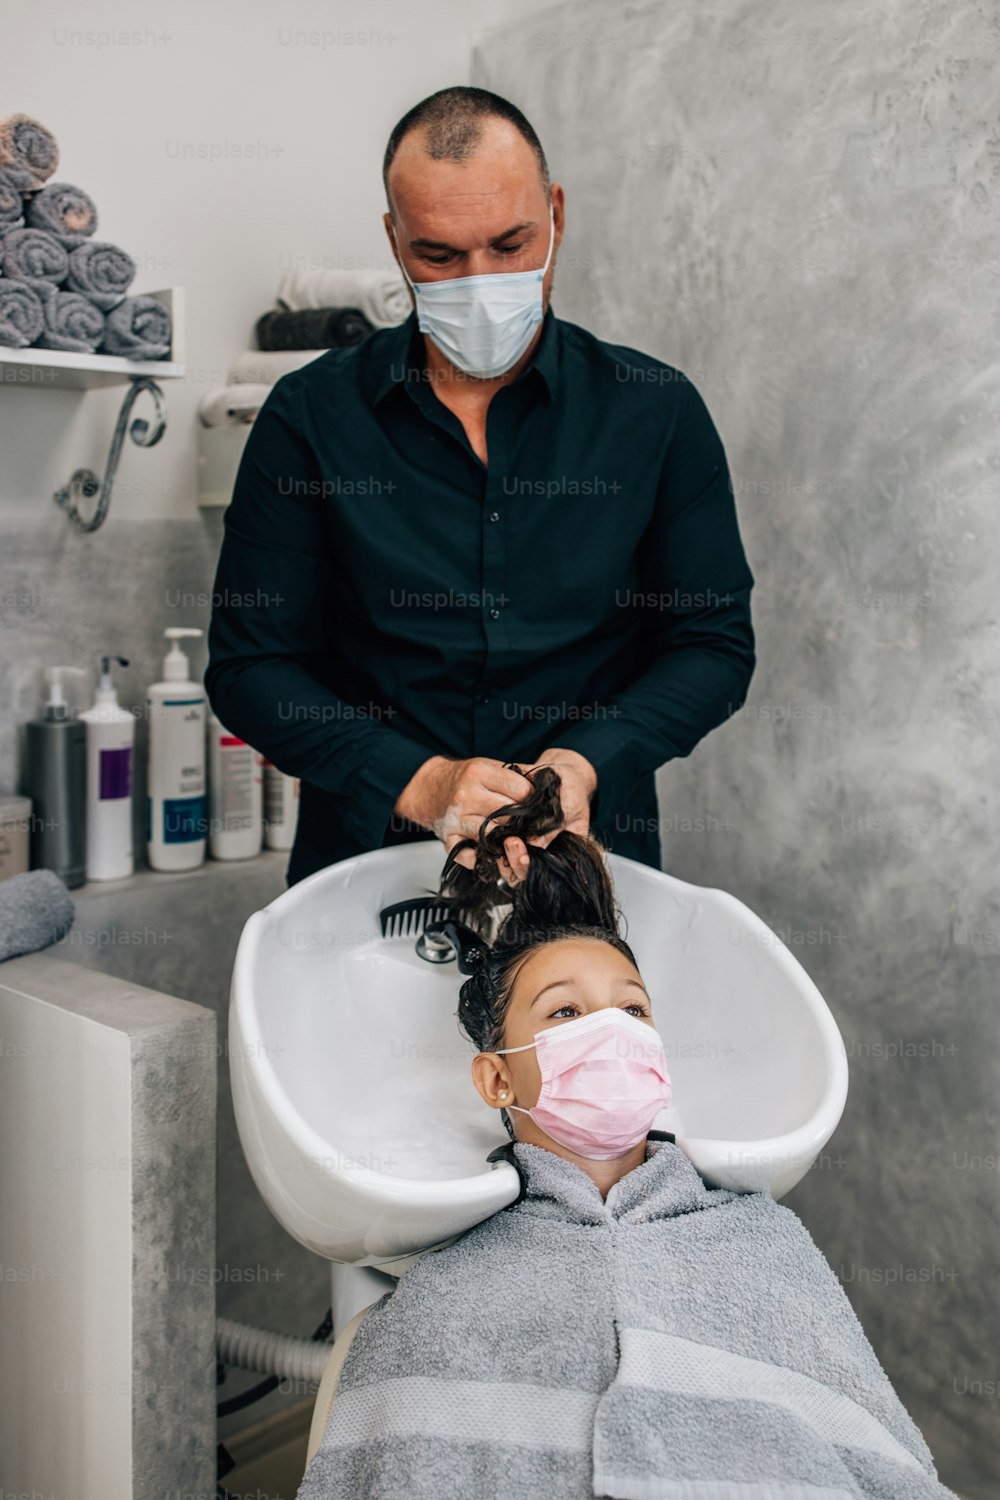 Giovane ragazza con maschera protettiva per il viso al trattamento dell'acconciatura mentre il parrucchiere professionista si lava delicatamente i capelli. Stile di vita da coronavirus e concetto di nuova normalità.